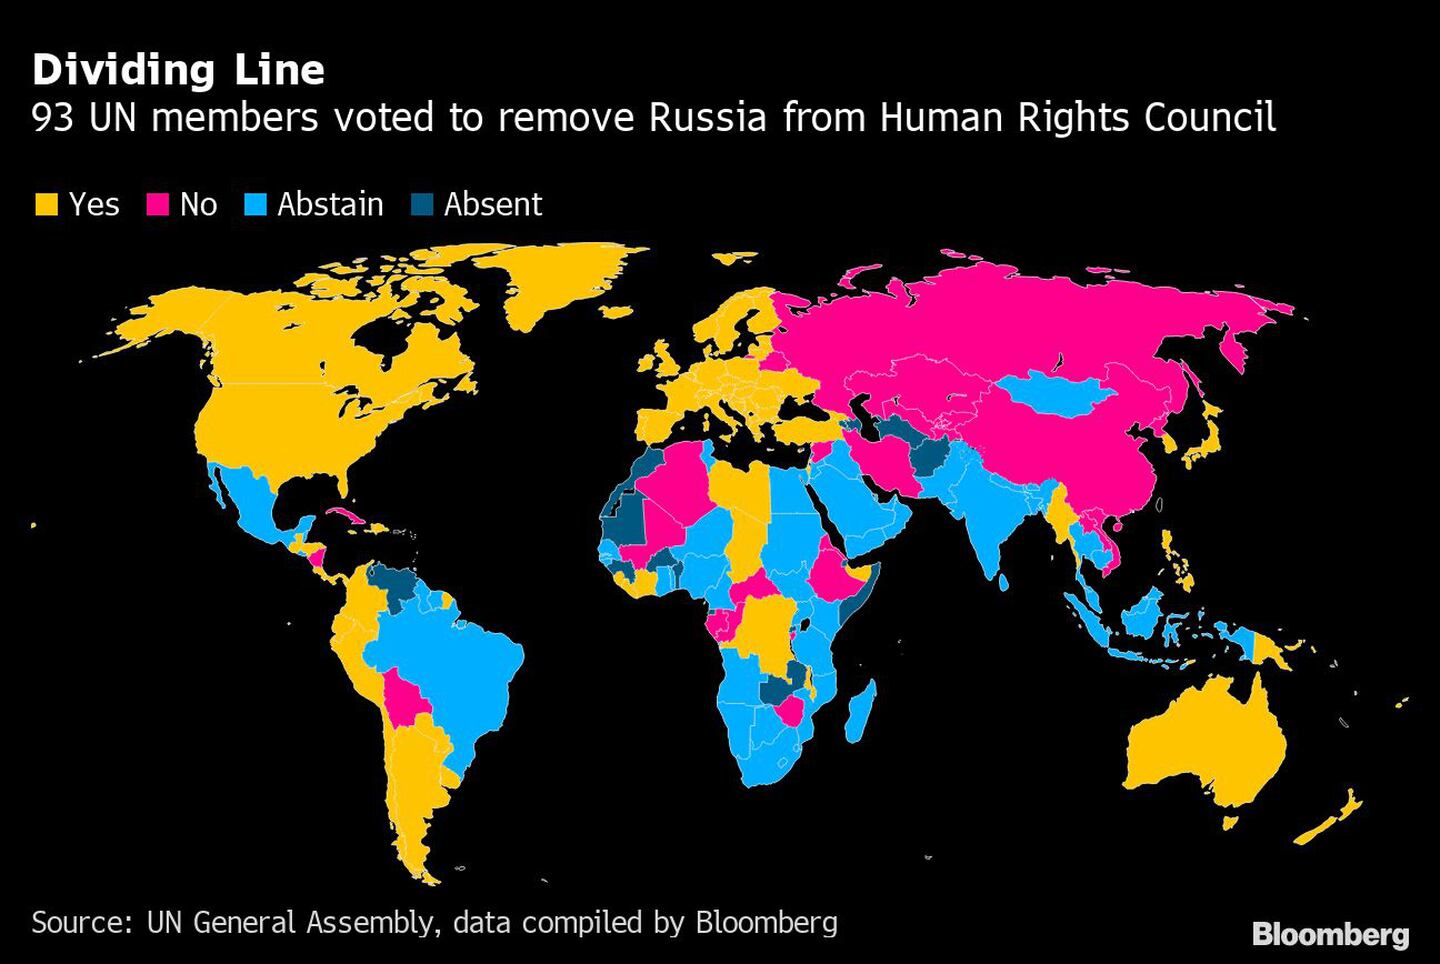 Línea divisoria: 93 miembros de la ONU votaron a favor de remover a Rusia del Consejo de Derechos Humanosdfd